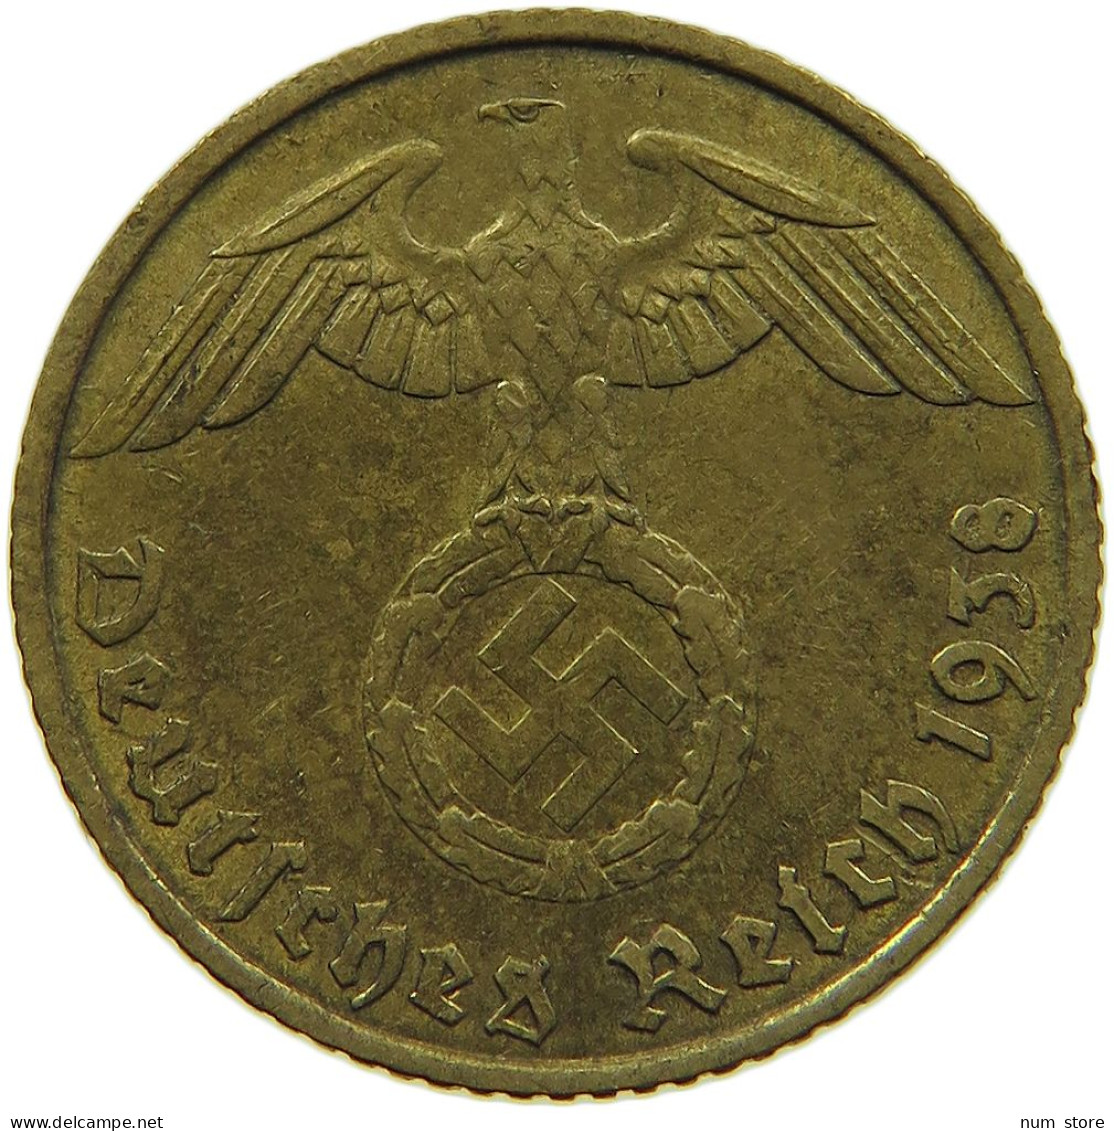 GERMANY 5 REICHSPFENNIG 1938 A #s091 0663 - 5 Reichspfennig